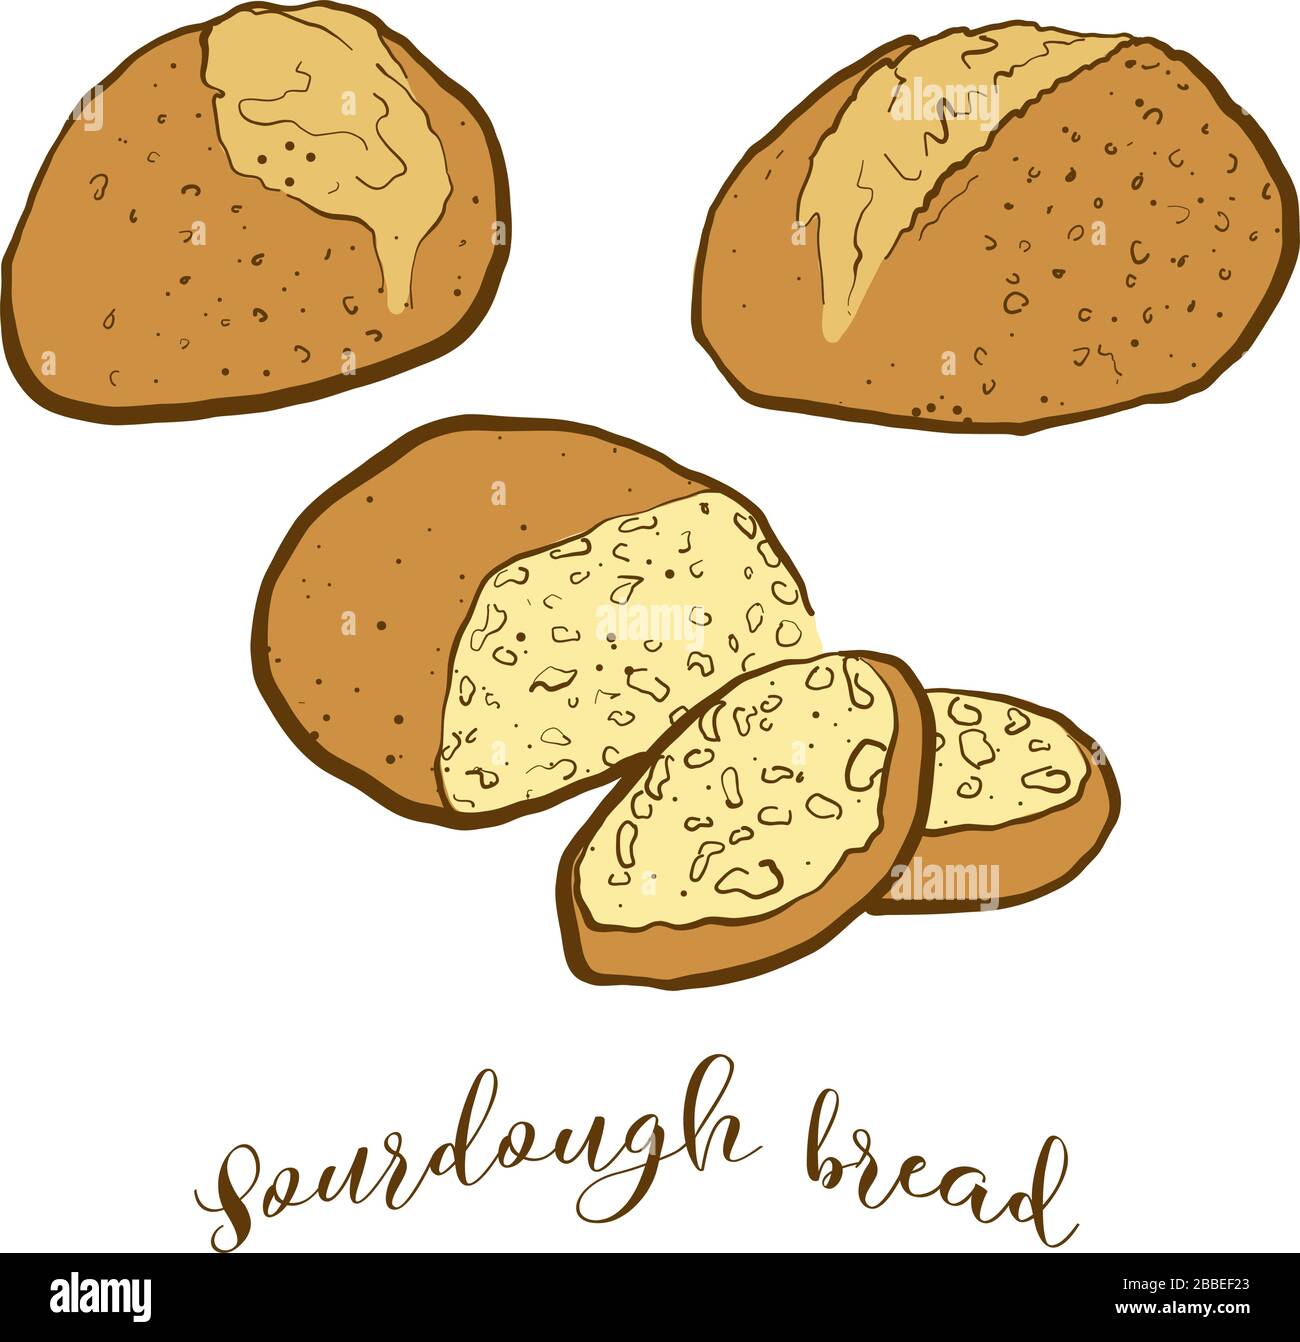 Dessin coloré du pain de pâte à pain. Illustration vectorielle de la nourriture de Sourdough, généralement connue dans le croissant fertile. Croquis de pain colorés. Illustration de Vecteur